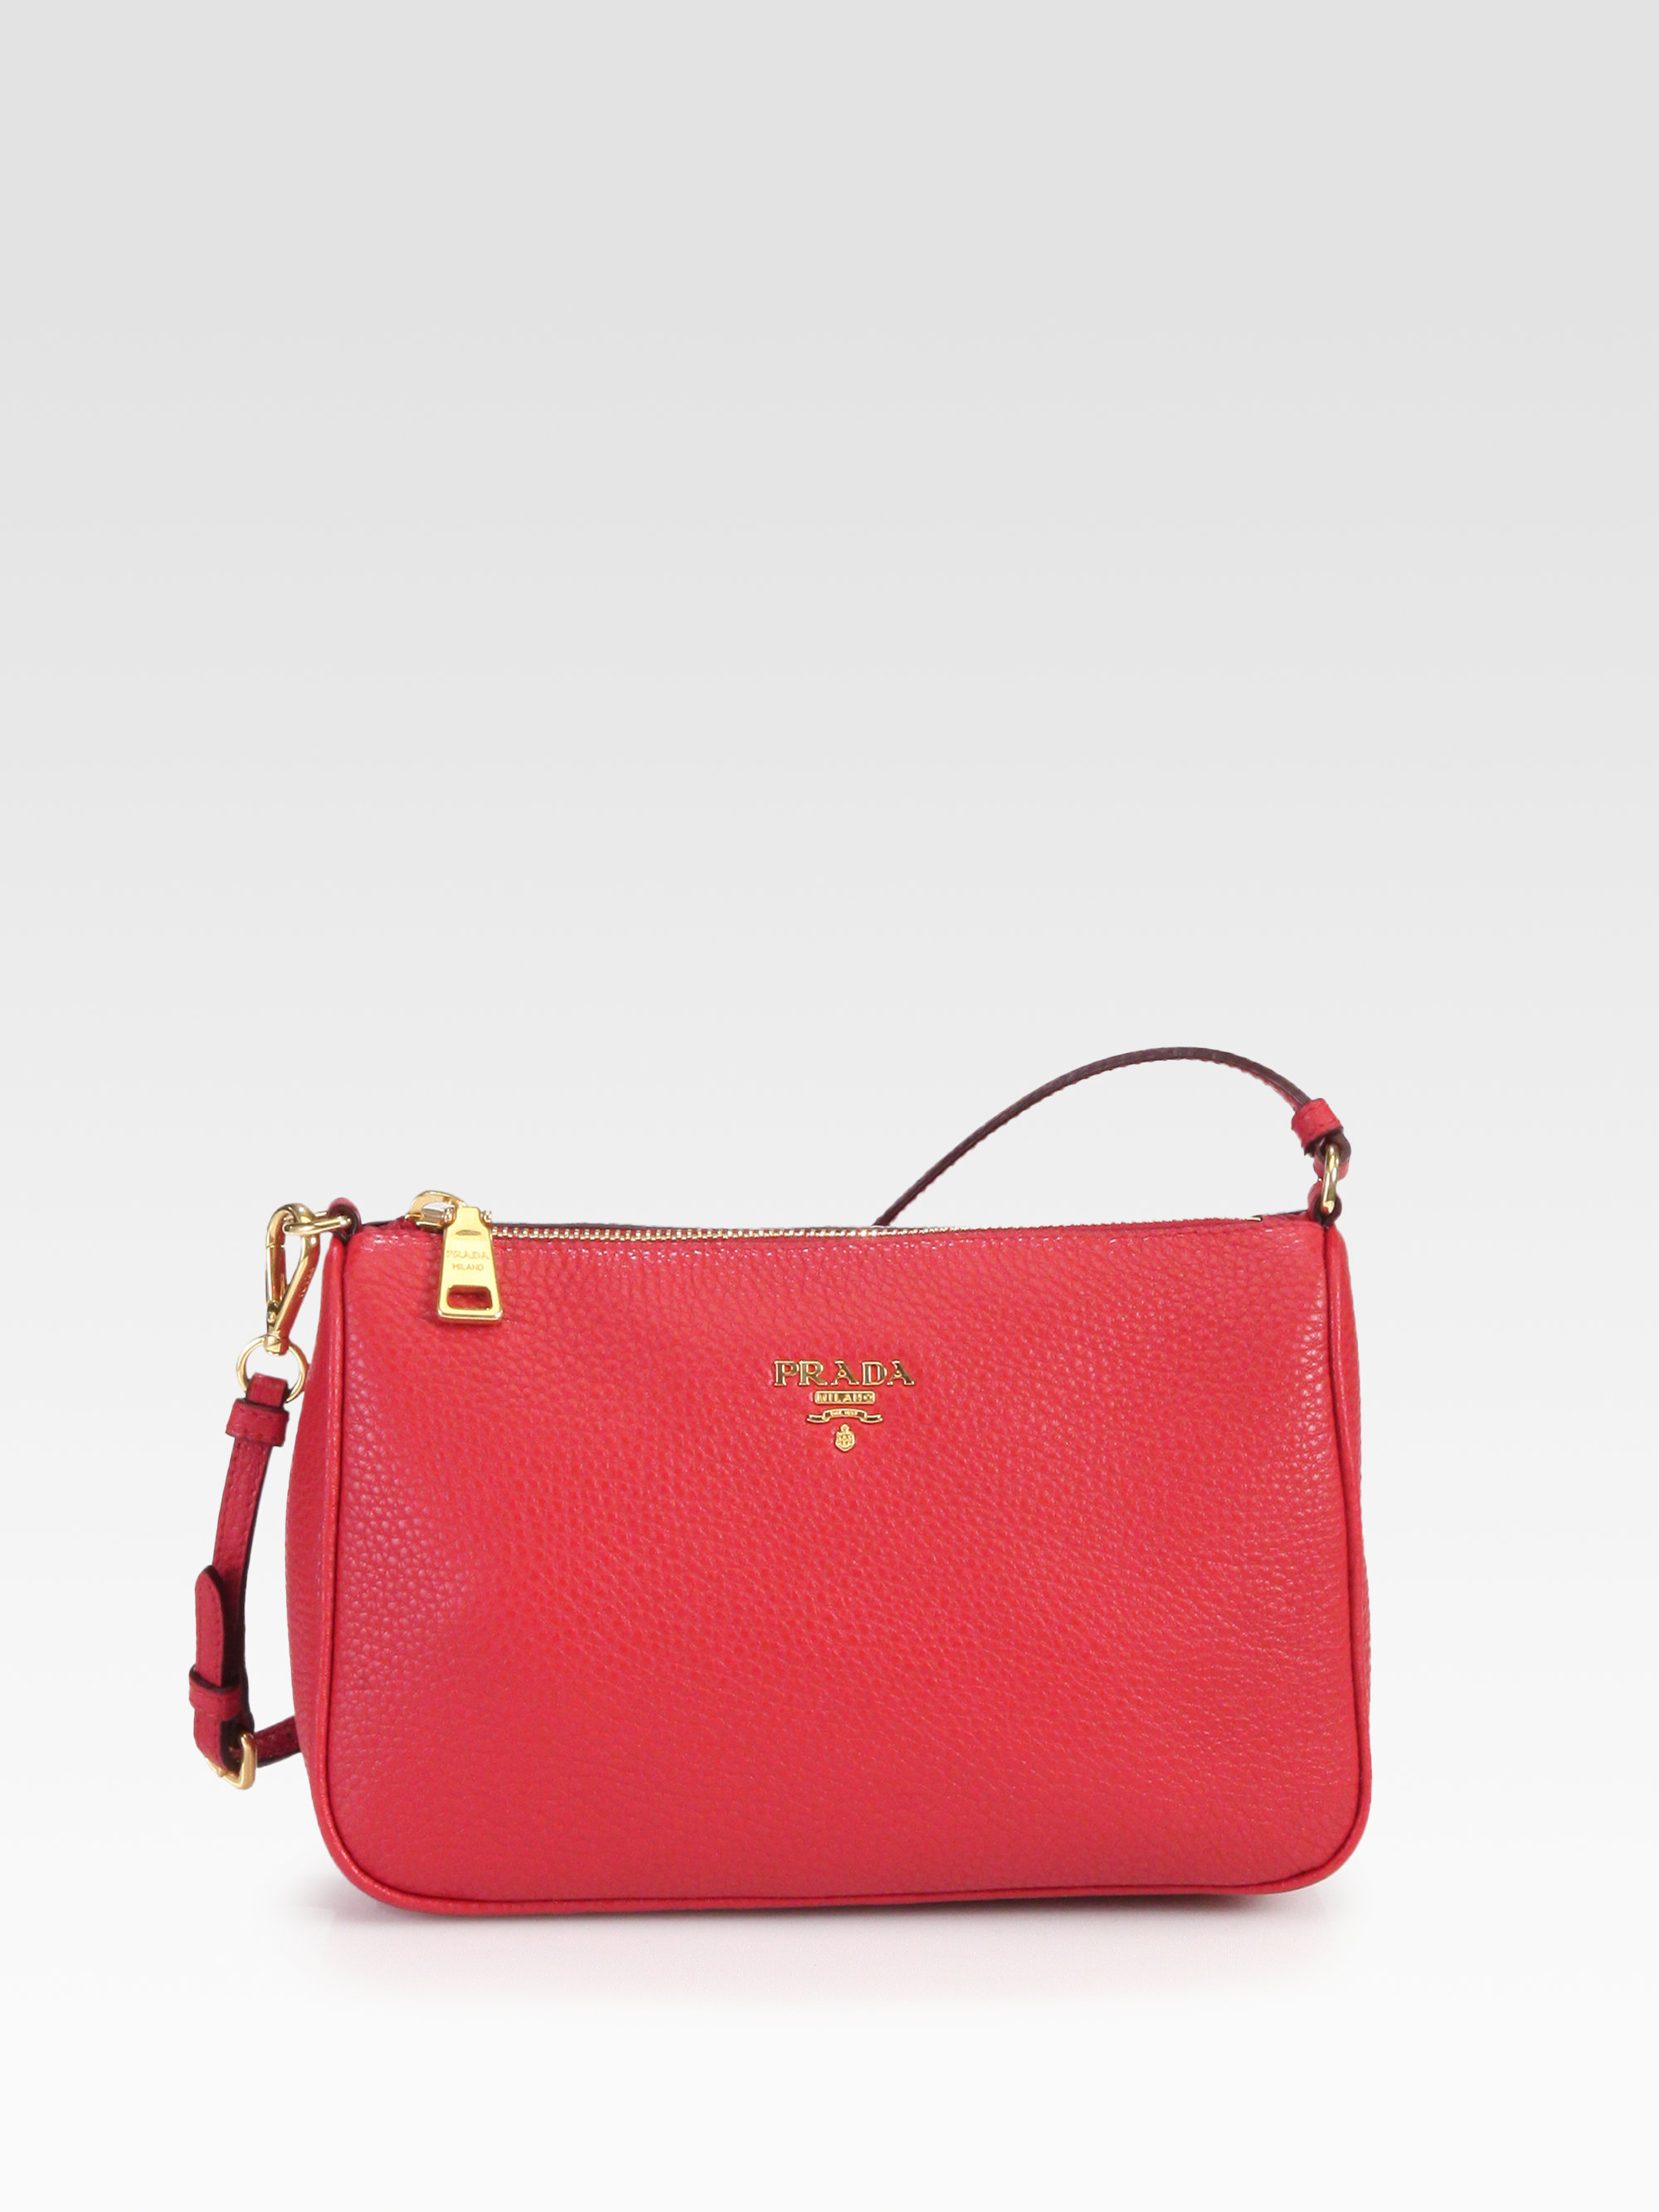 Prada Daino Mini Hobo Bag in Red - Lyst